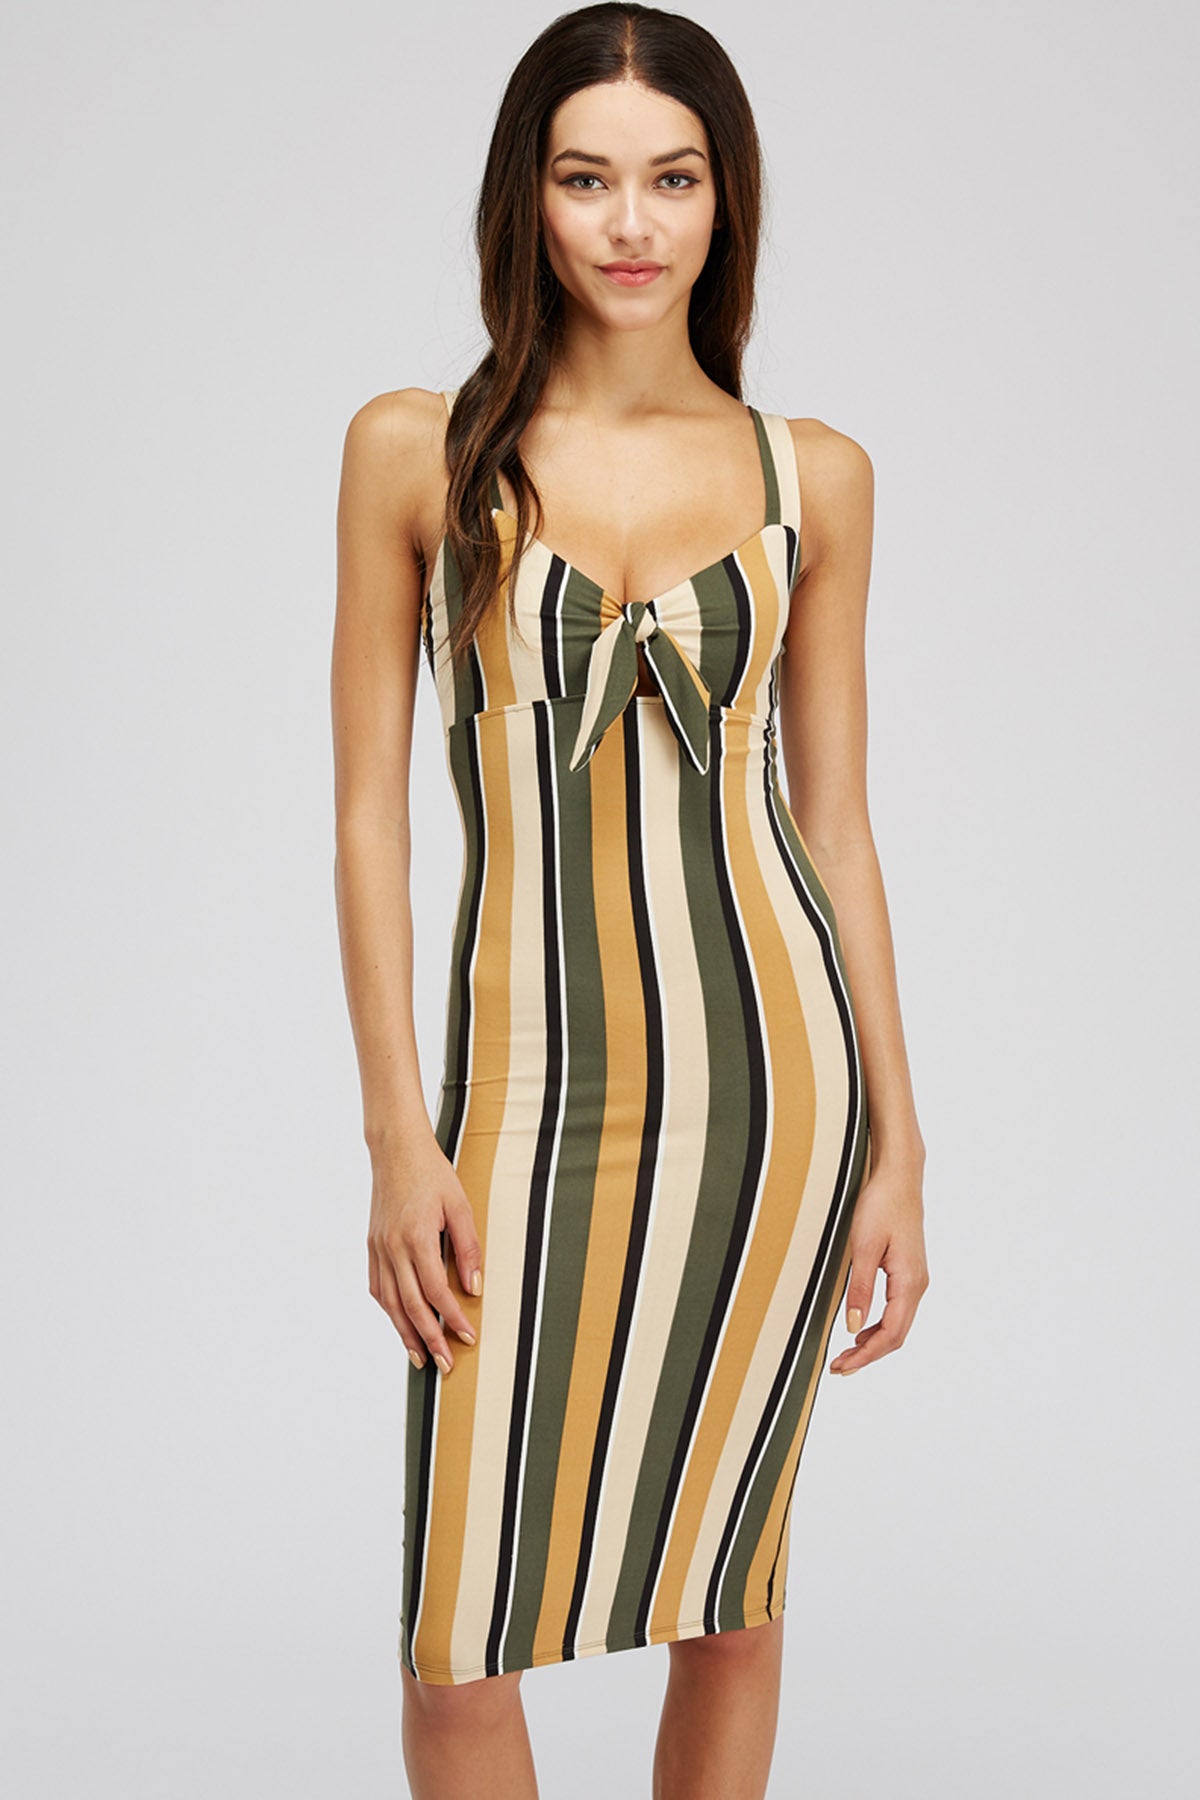 [$3/piece] Multicolor Striped Tie Front Bodycon Dress